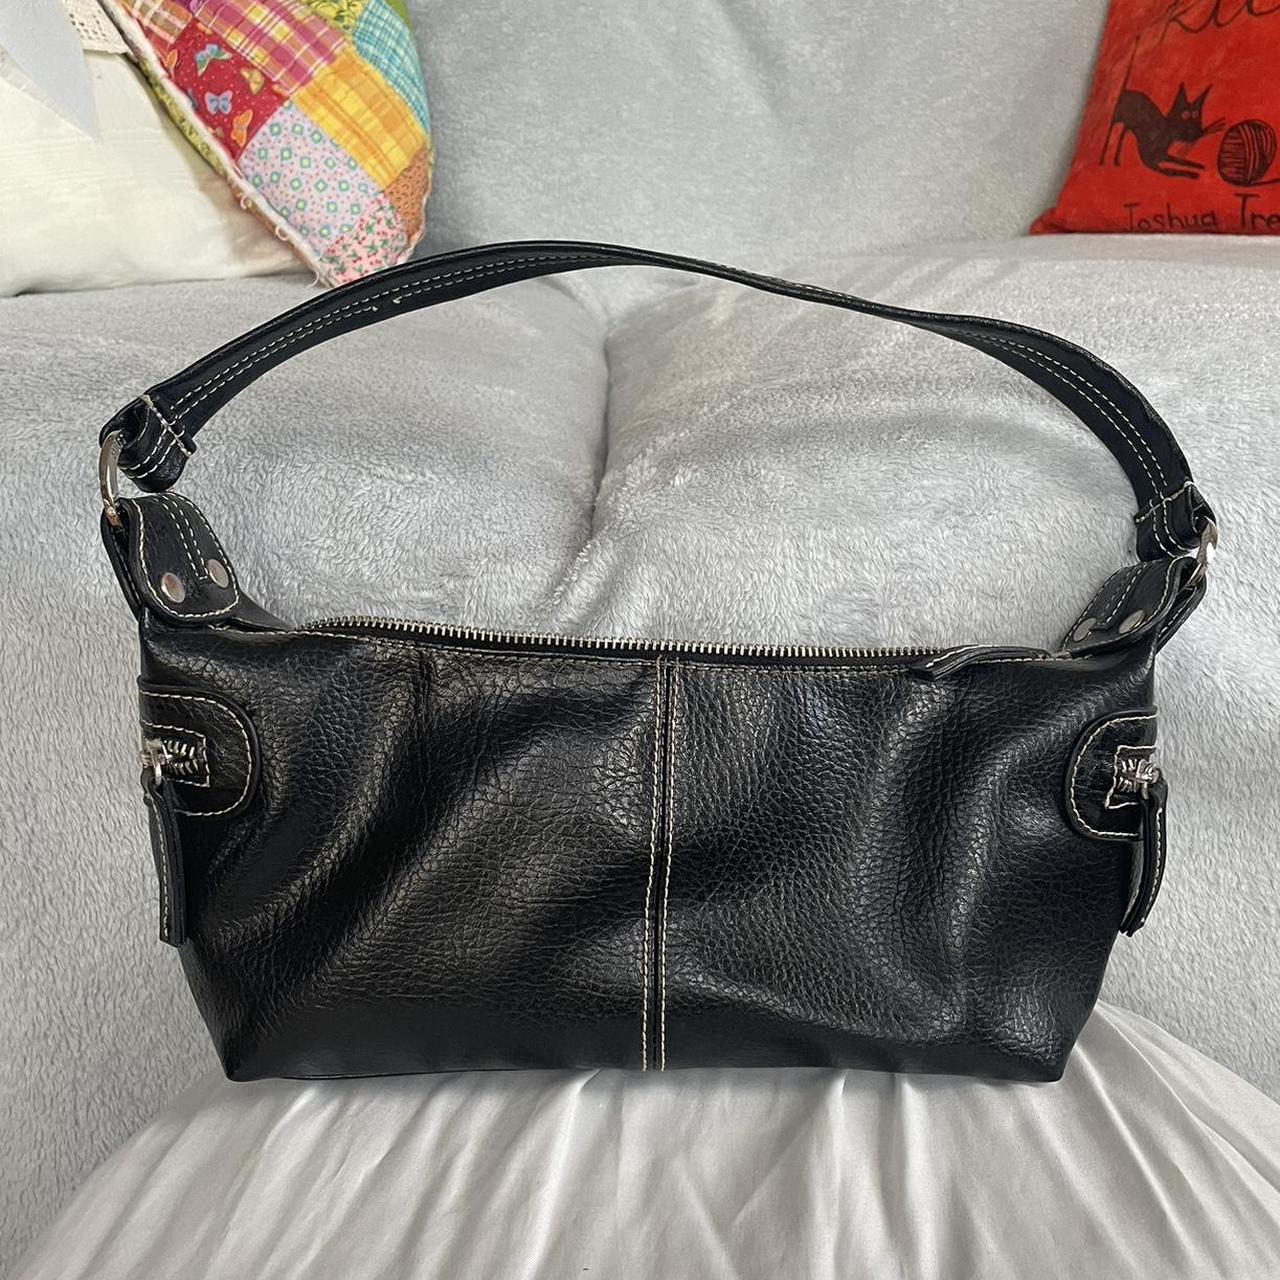 Vintage Black Small Shoulder/Hand bag - Brand... - Depop